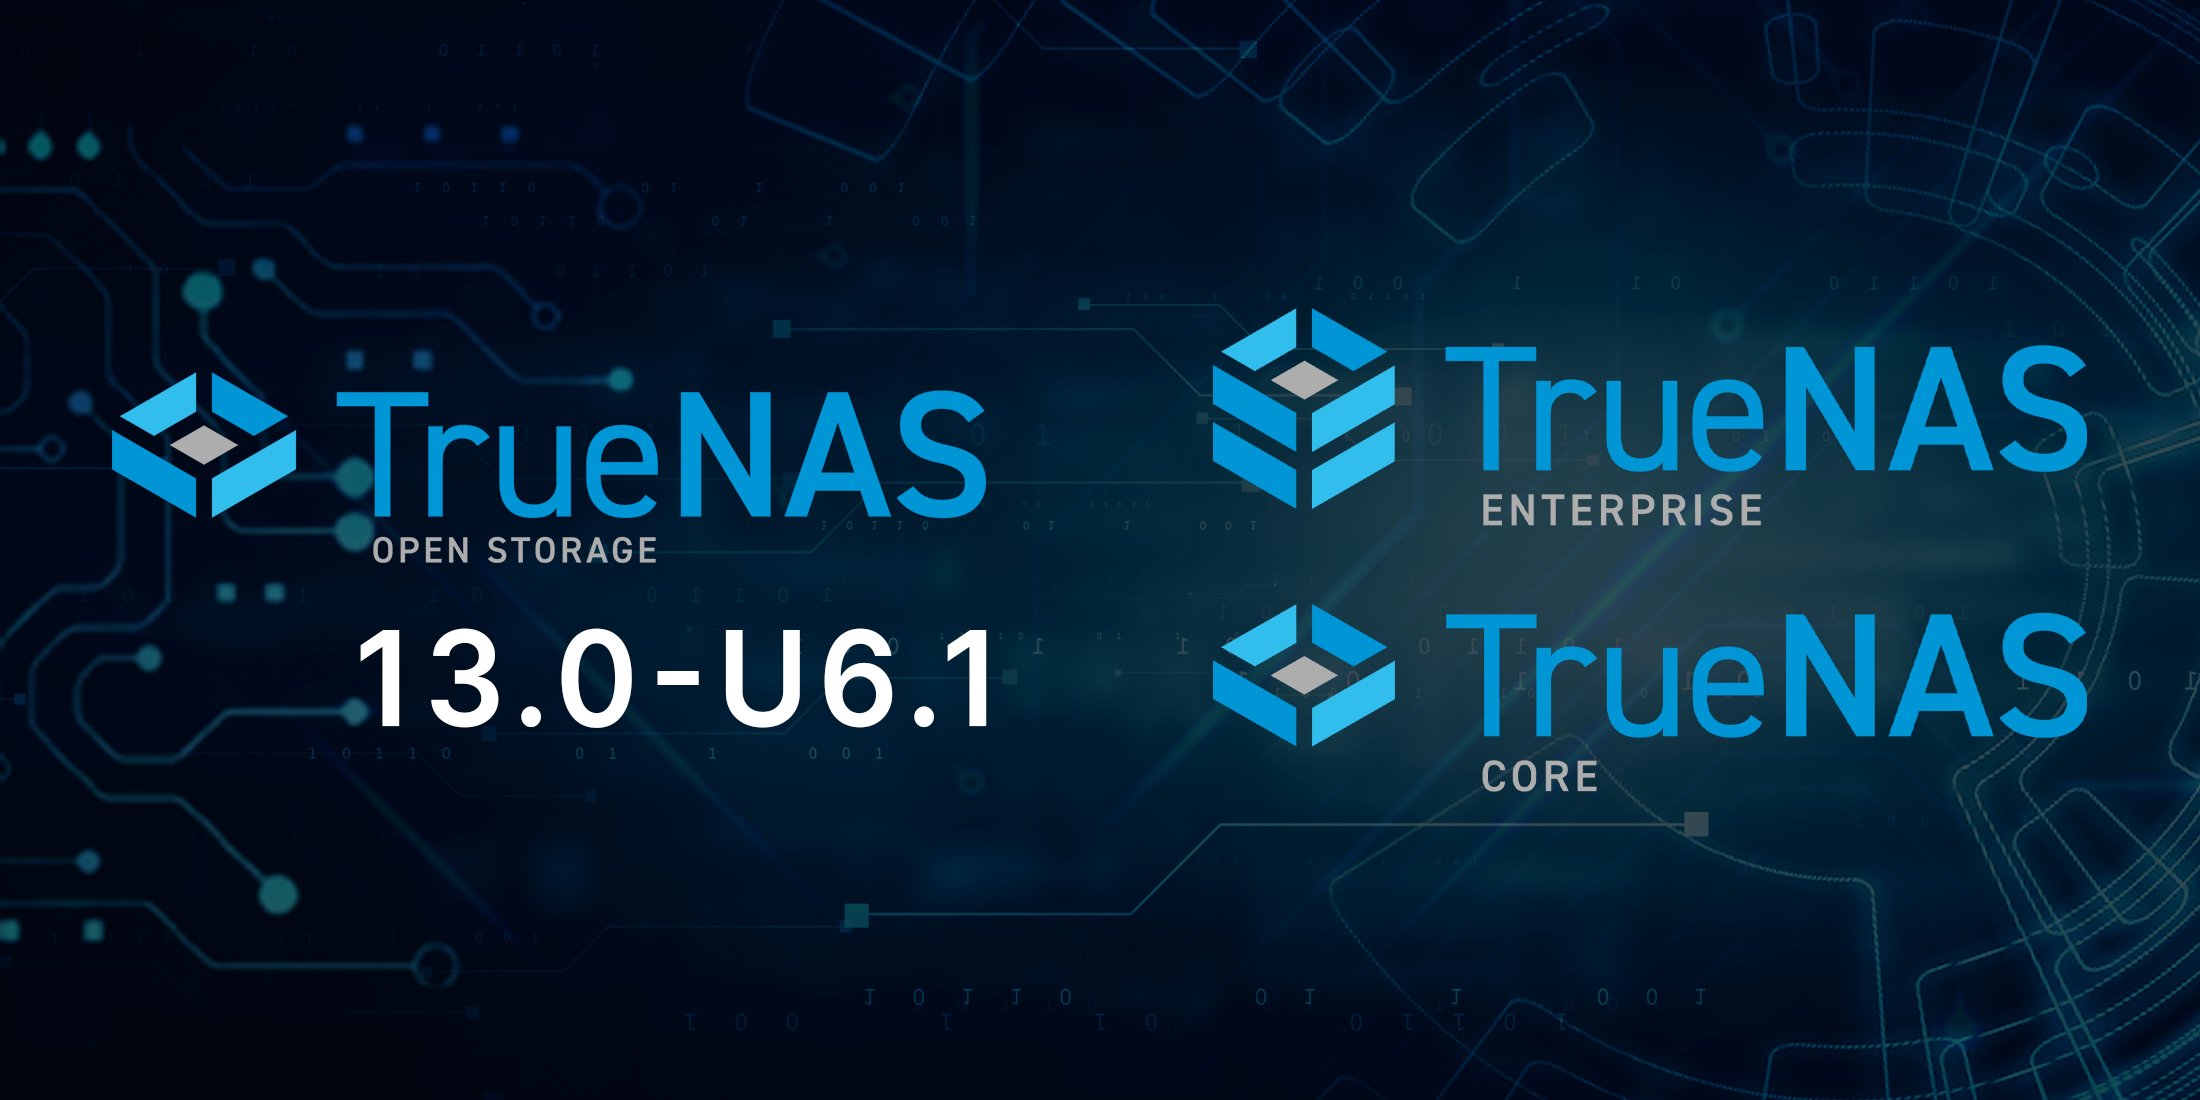 TrueNAS 13.0-U6.1 Release: Concluding the TrueNAS 13.0 Series